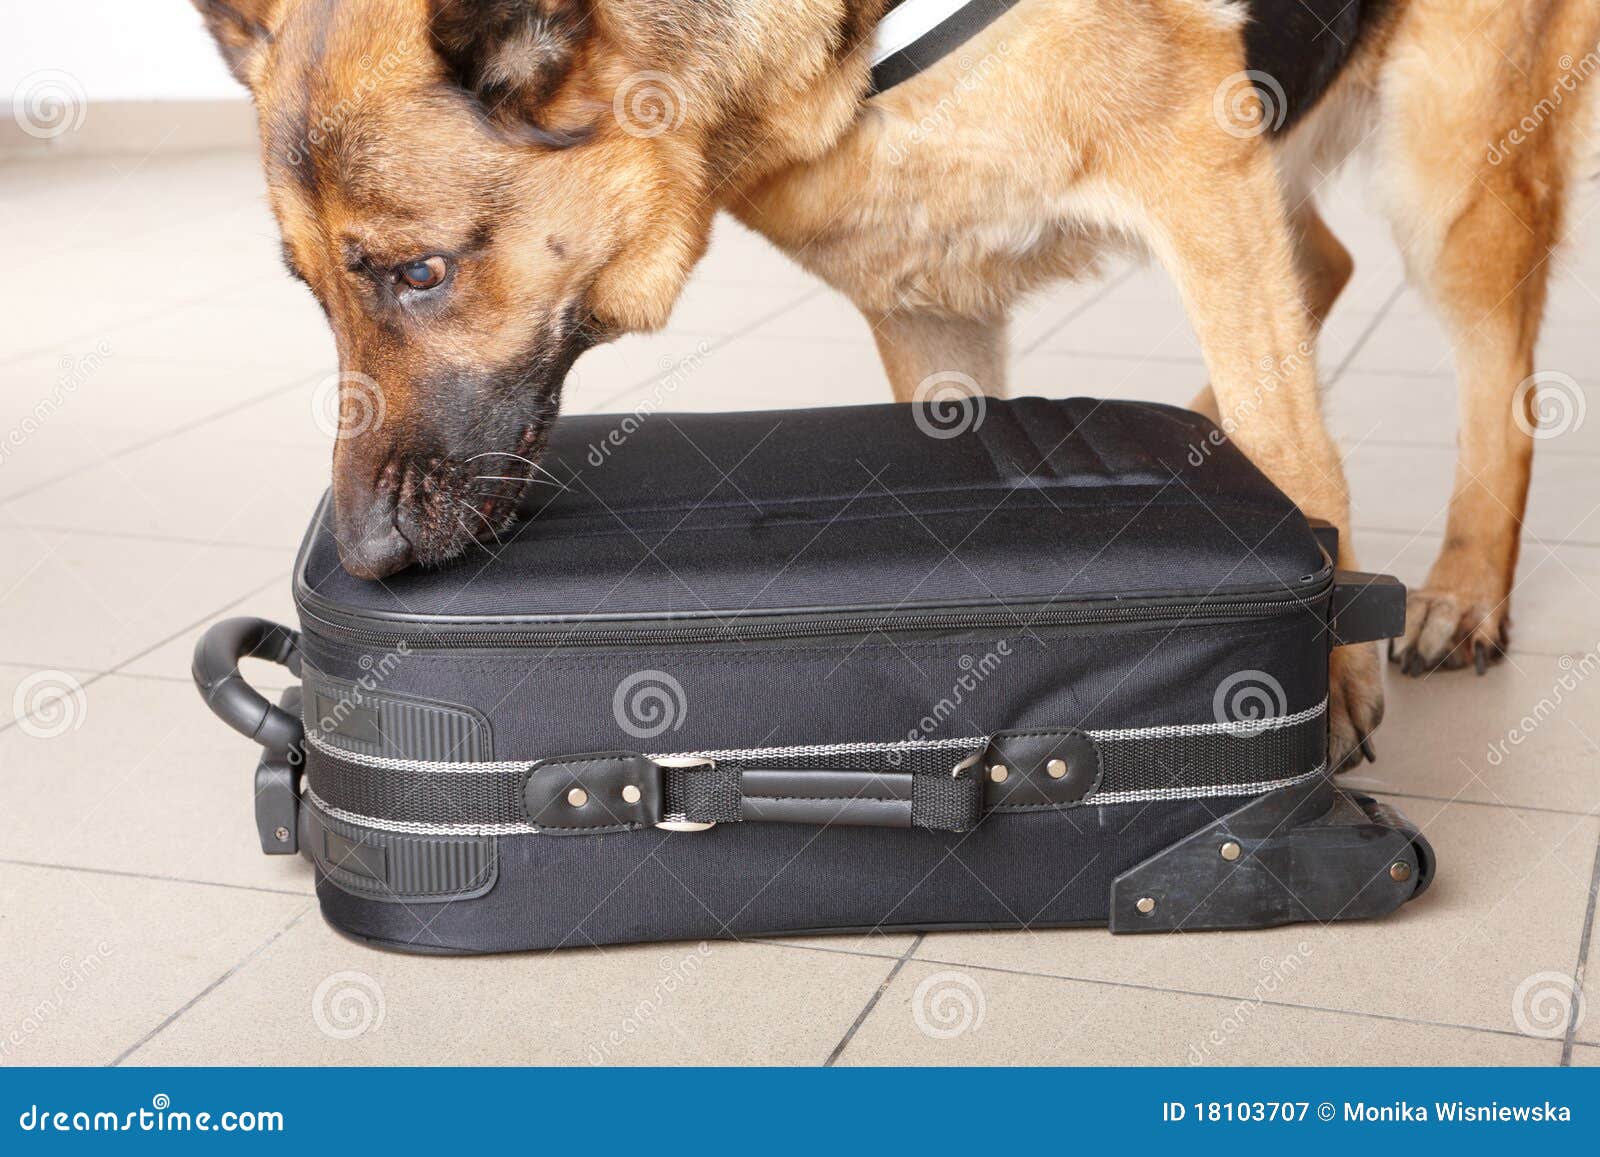 sniffing dog chceking luggage